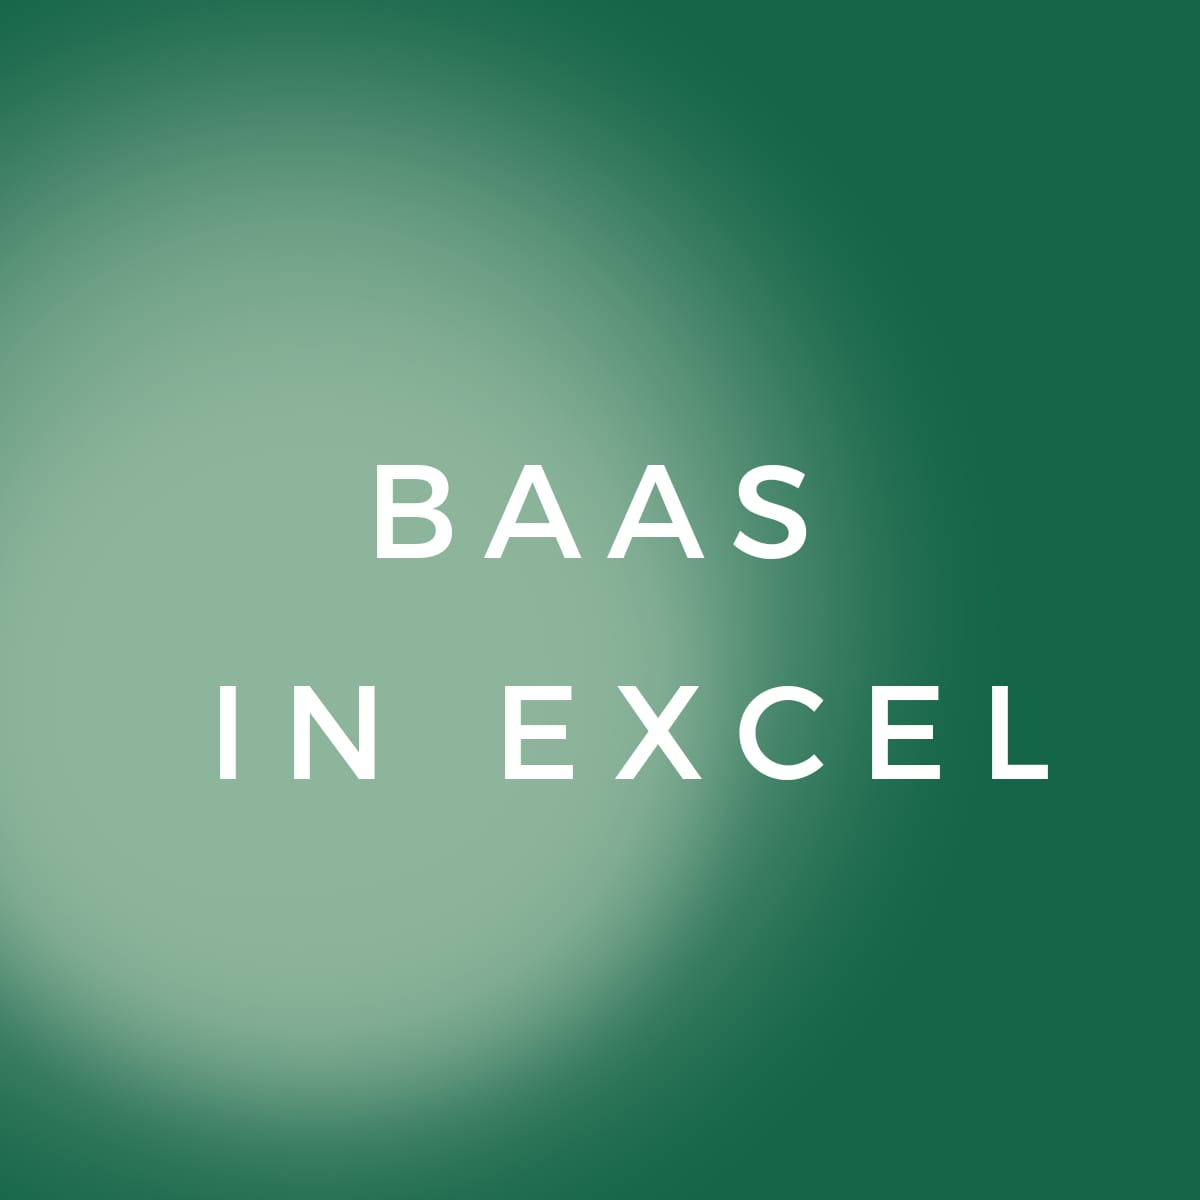 Baas in Excel